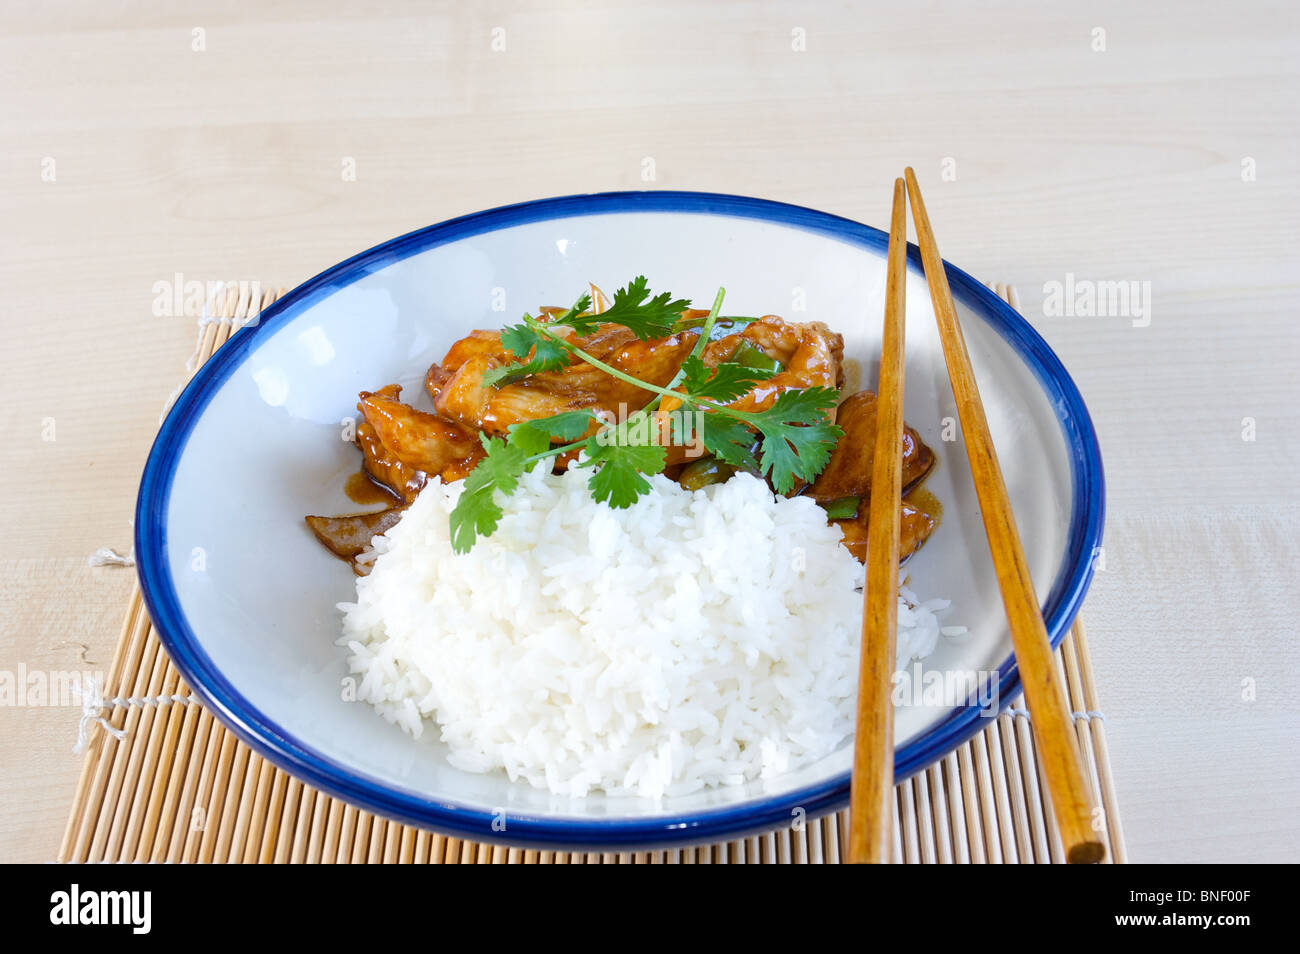 Cuisine asiatique riz poulet thai food chinese food Banque D'Images